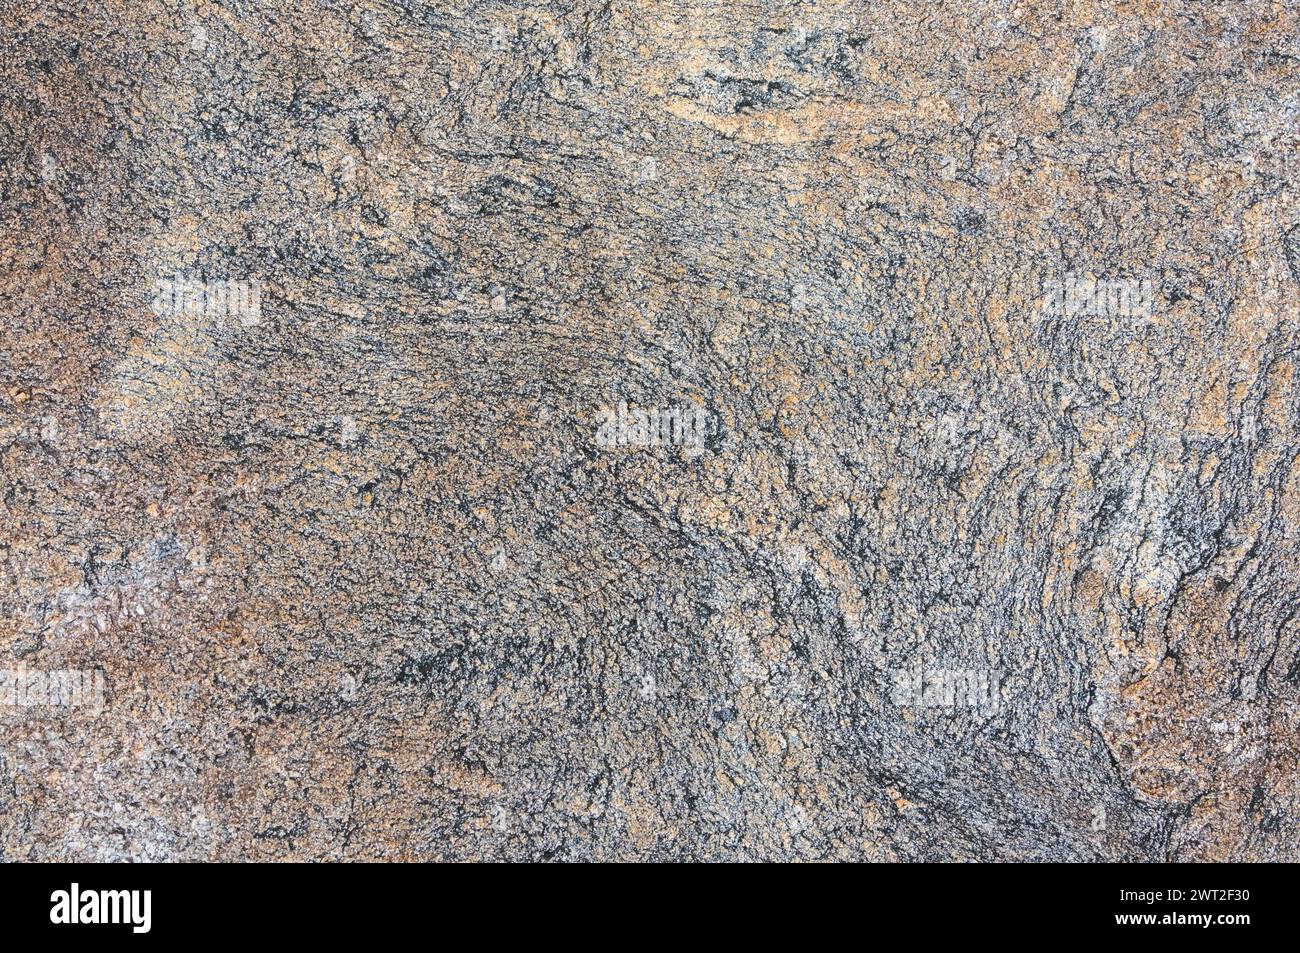 Detaillierte Nahaufnahme einer strukturierten Granitoberfläche, die die komplizierten Muster und Farben des Natursteins zeigt. Stockfoto